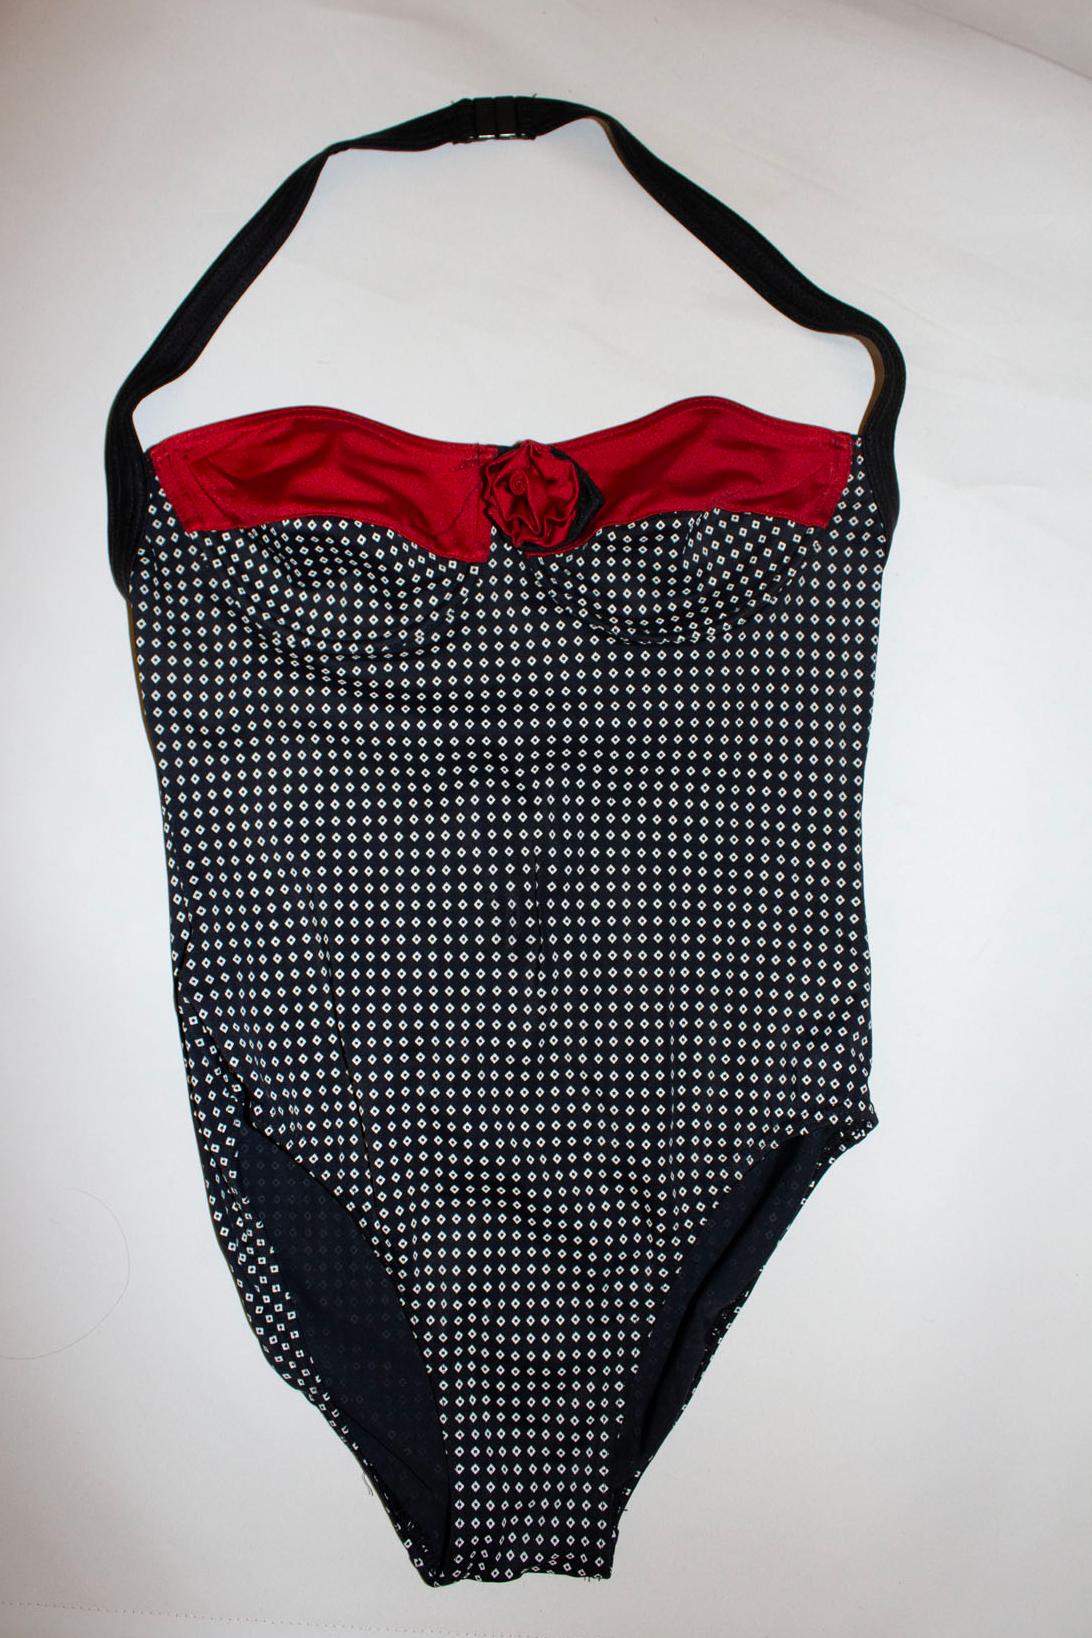 Ein lustiger Vintage-Badeanzug von der britischen Designerin Mary Quant. Der Anzug hat einen schwarz-weißen Aufdruck mit rotem Besatz und Blumendetails. UK Größe 14 ( alt 14) , Made in UK.
Maße Oberweite bis zu 35'', Länge 32''